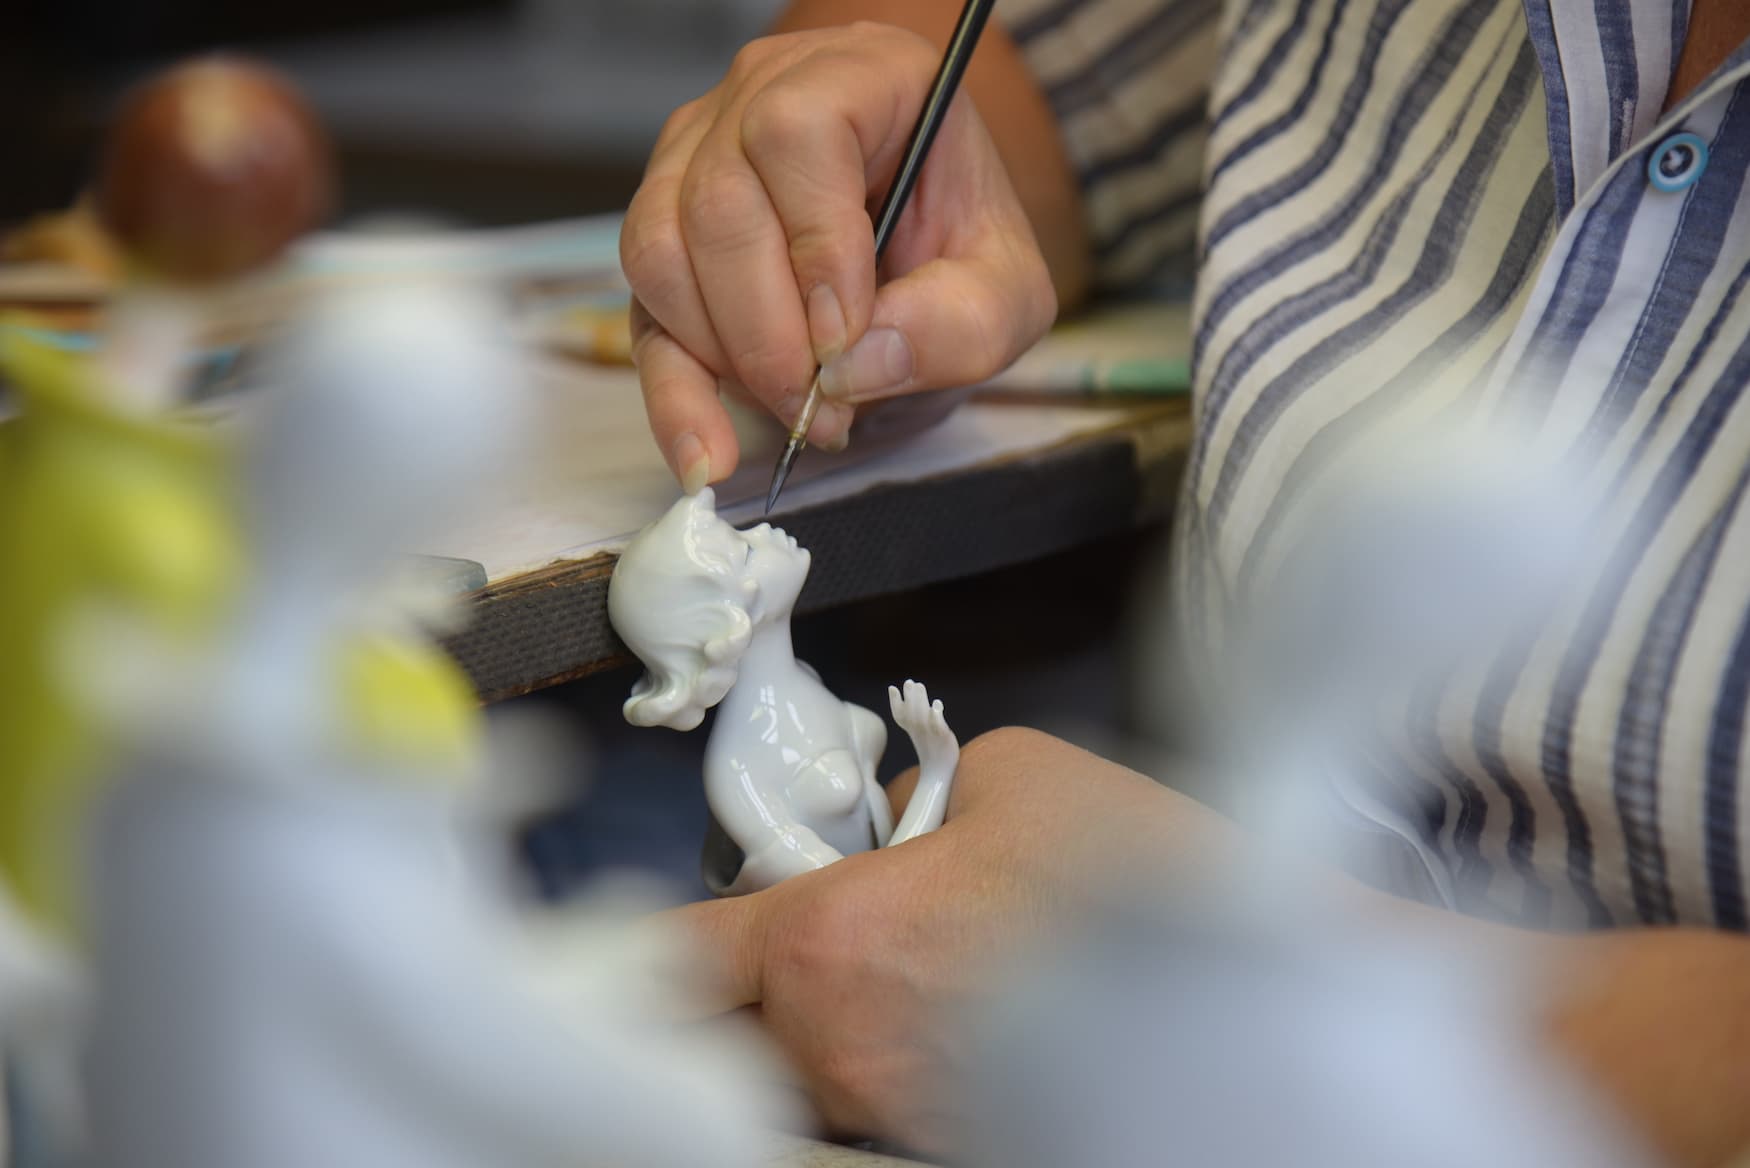 Ingrid Zacher paints porcelain figure